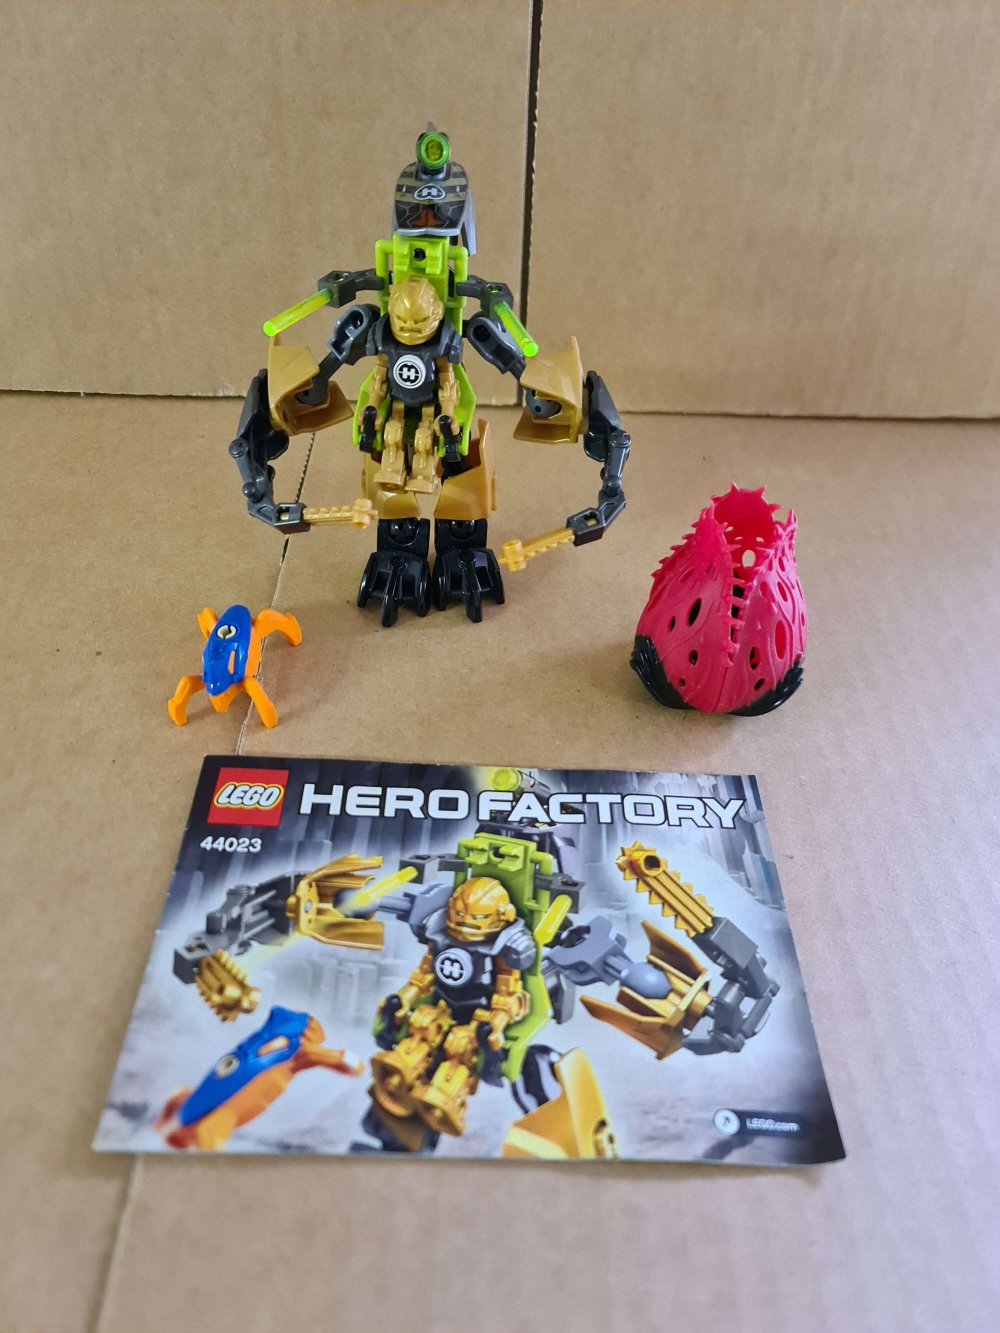 Sett 44023 fra Lego Hero Factory : Heroes serien
Flott sett. Komplett med manual og alle deler.
